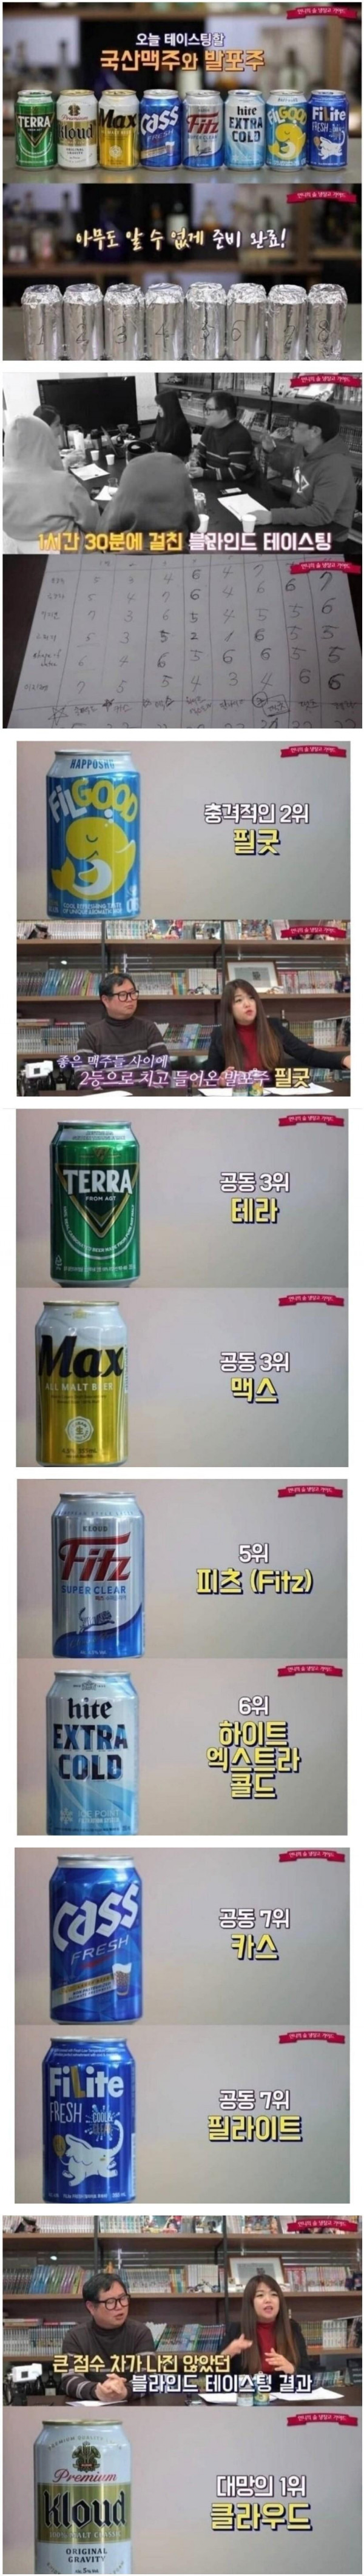 한국 맥주 블라인드 테스트